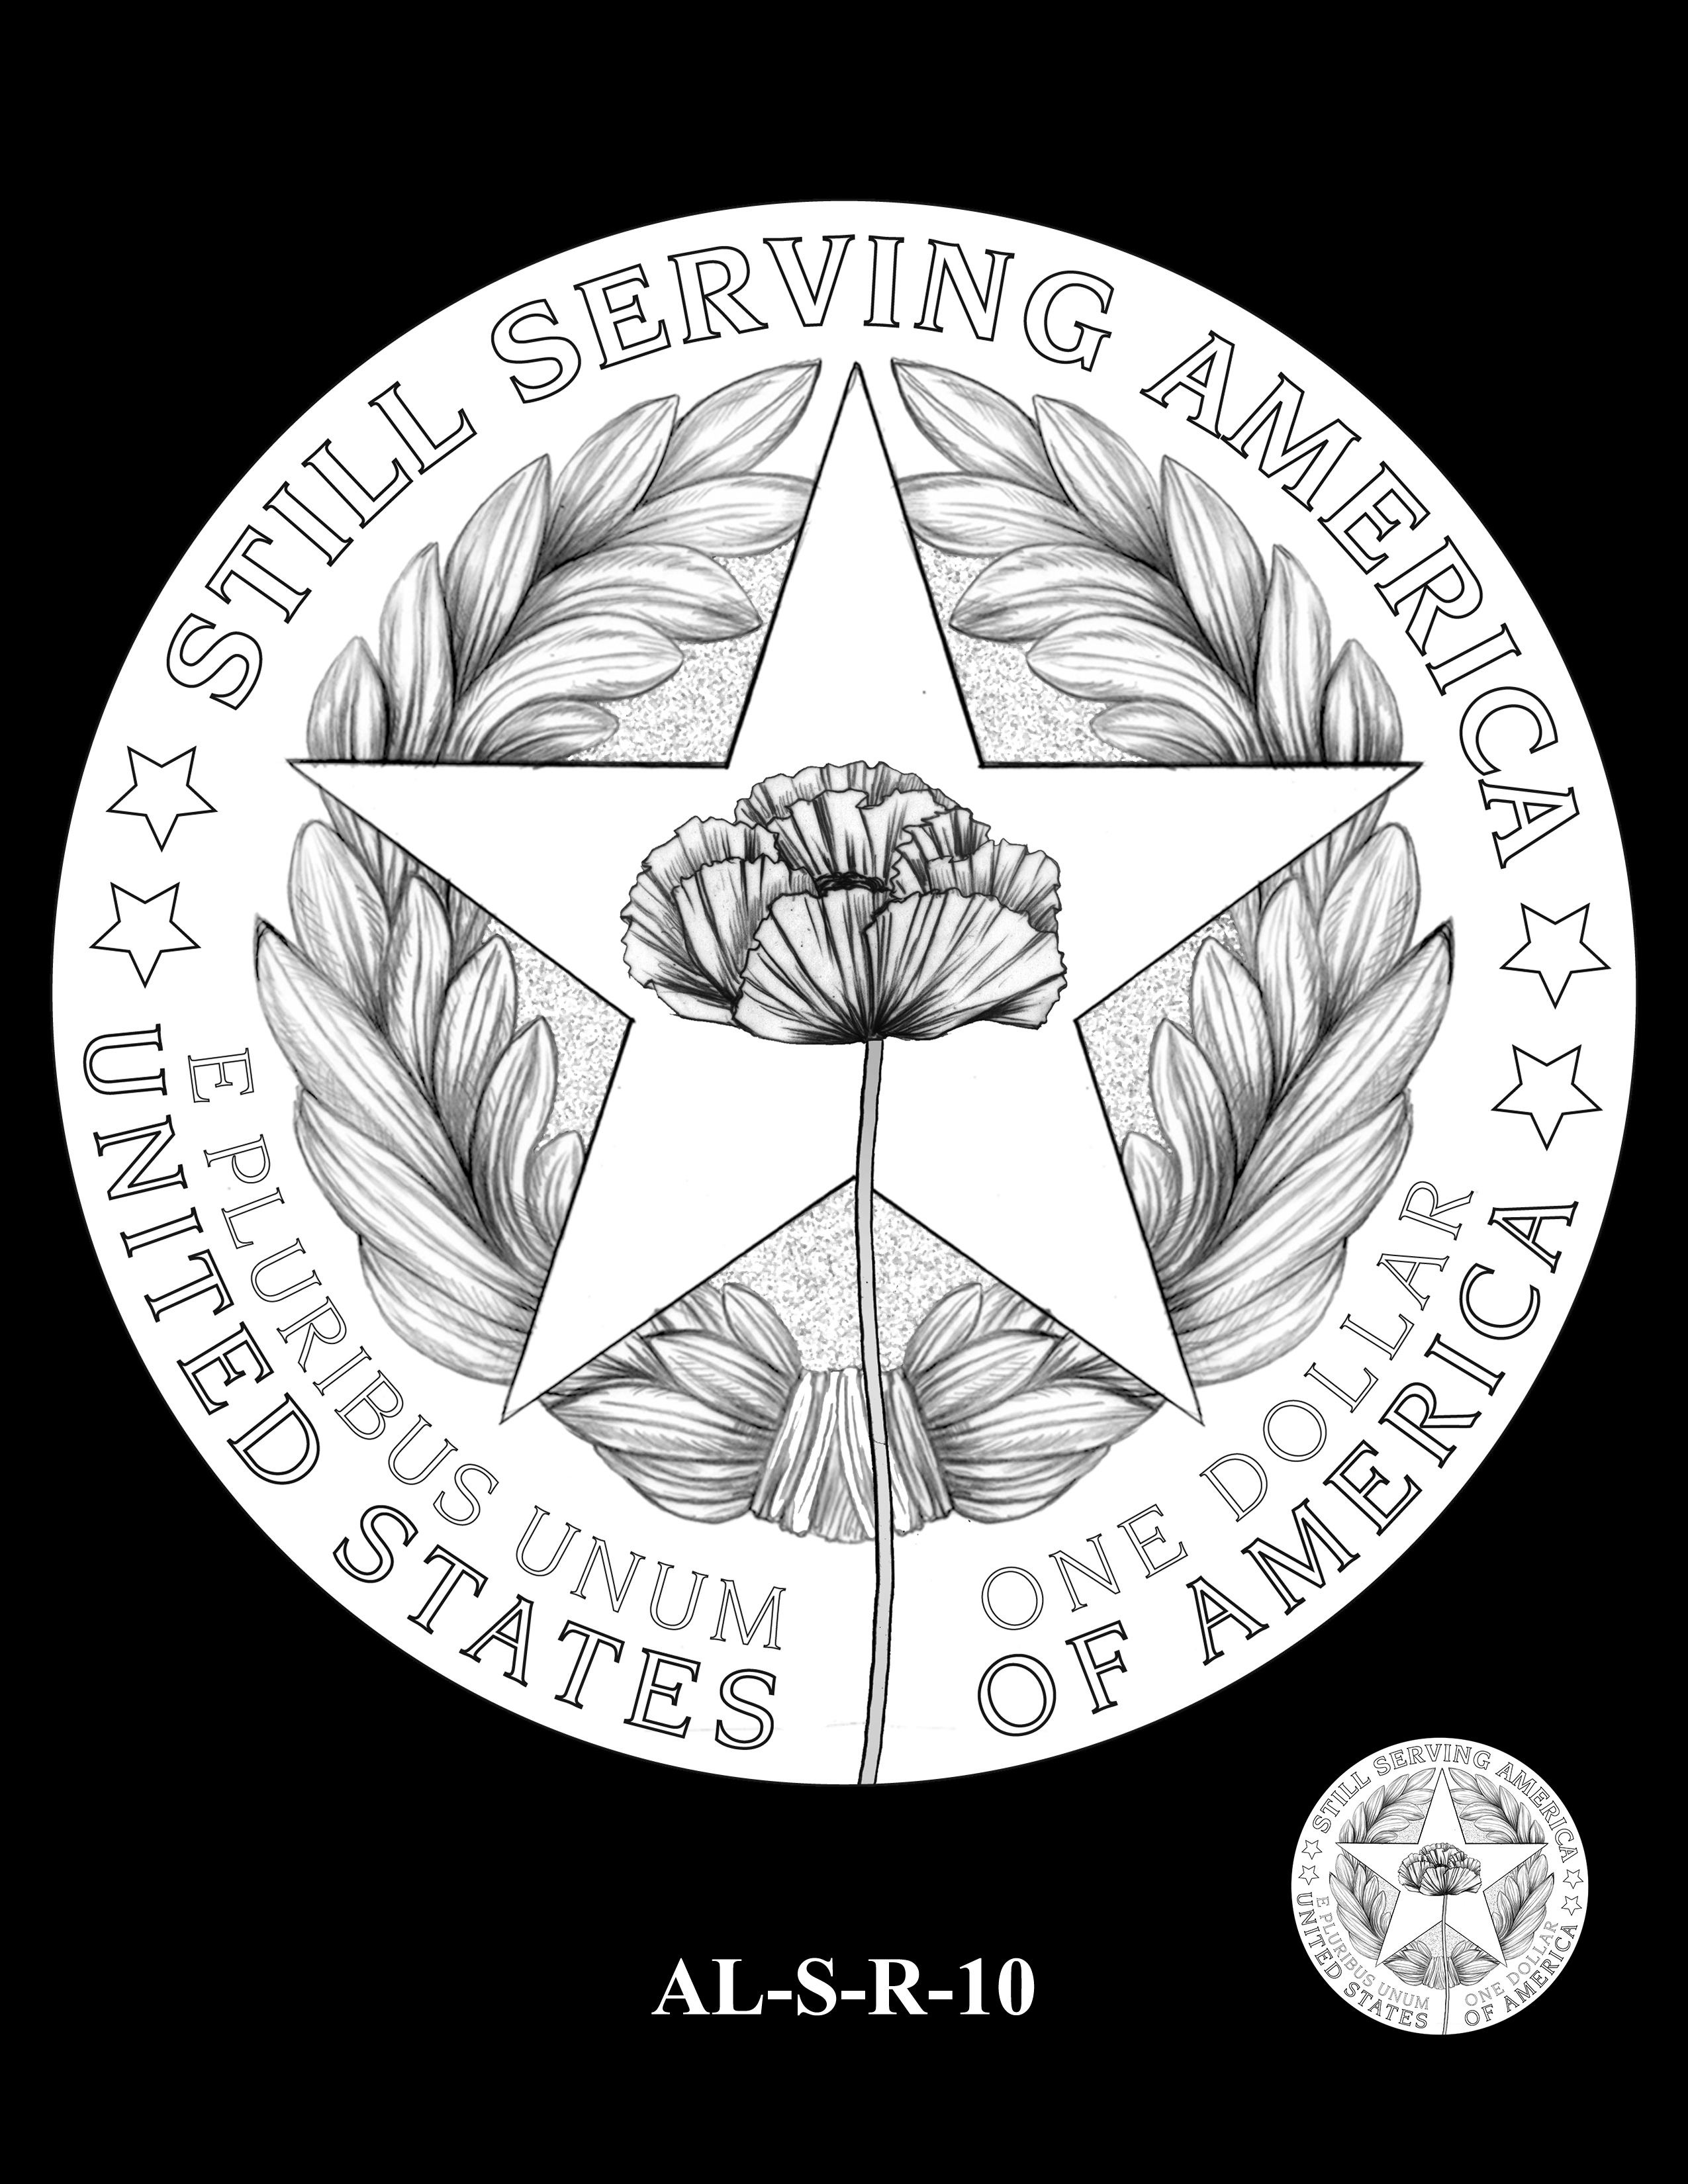 AL-S-R-10 -- 2019 American Legion 100th Anniversary Commemorative Coin Program - Silver Reverse